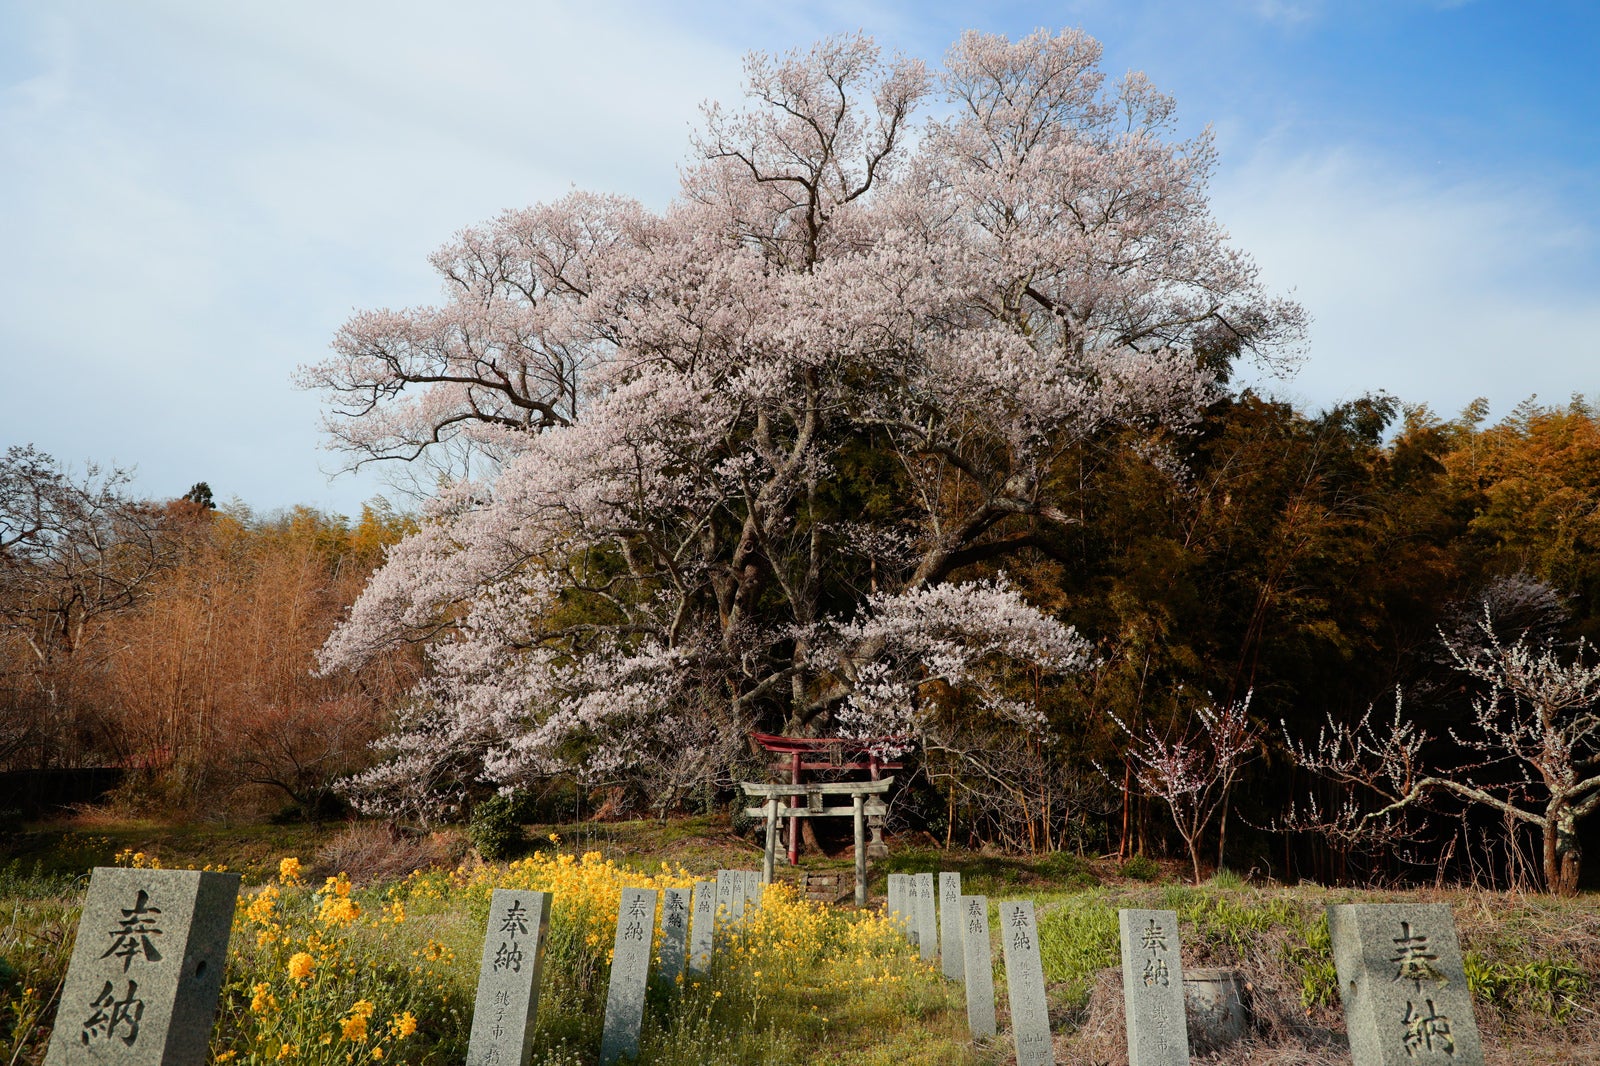 「大和田稲荷神社へ続く奉納石柱と満開の子授け櫻に構える鳥居」の写真